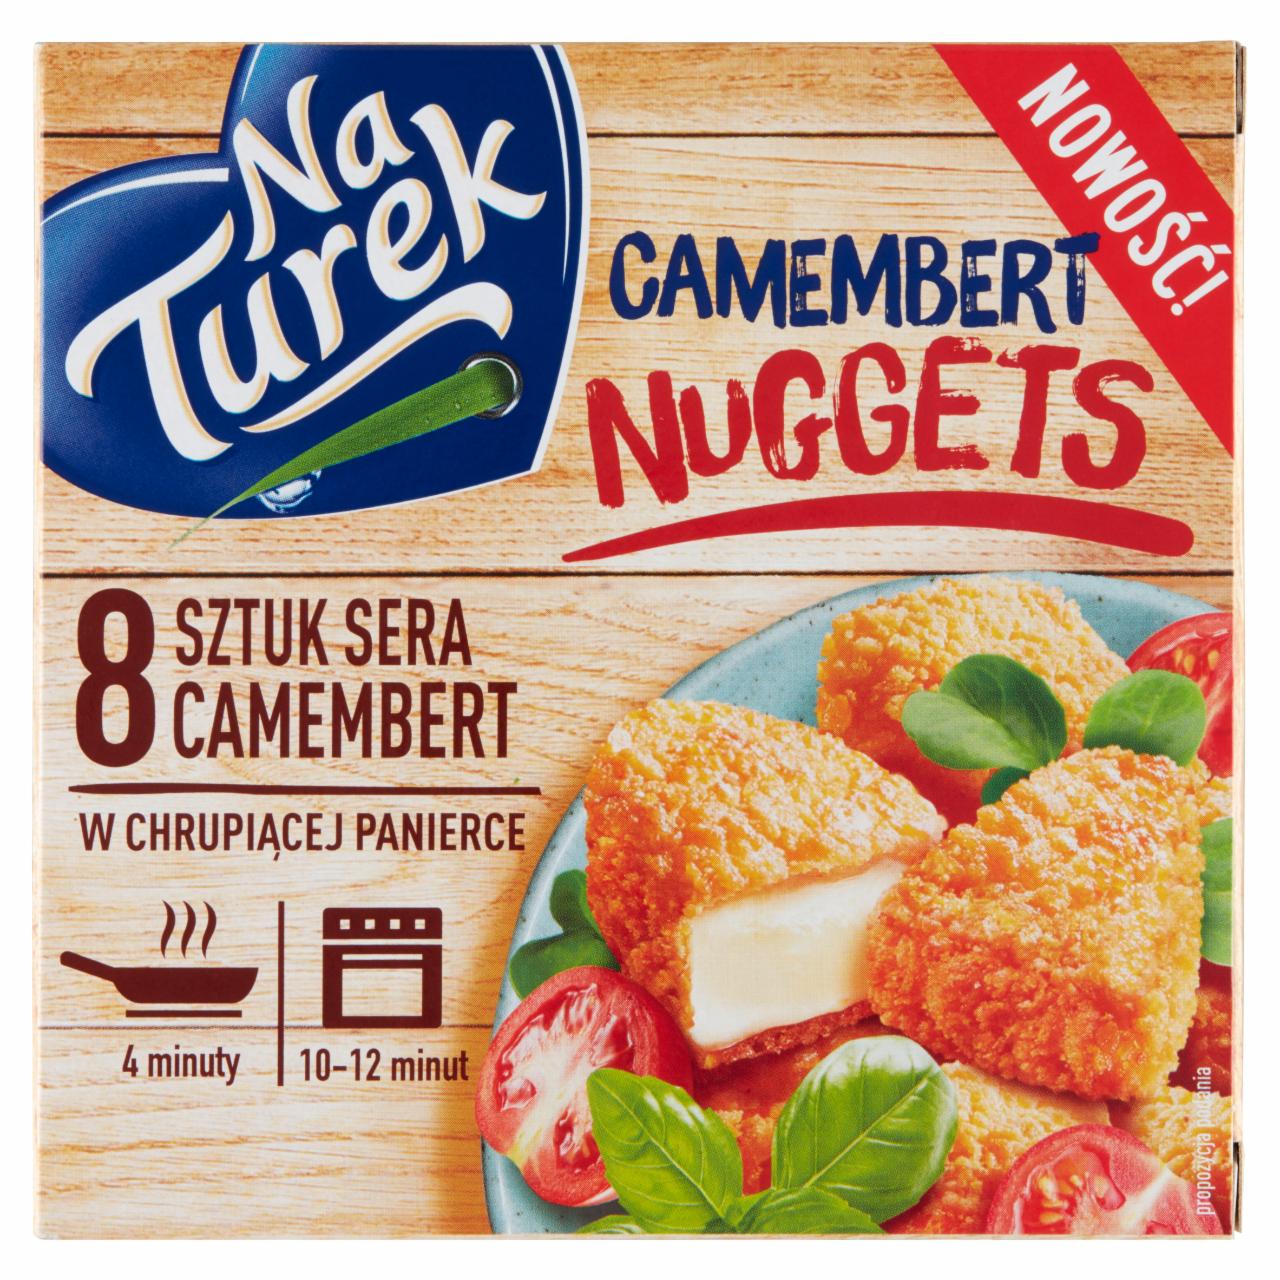 Zdjęcia - NaTurek Camembert Nuggets Ser Camembert w chrupiącej panierce 188 g (8 sztuk)